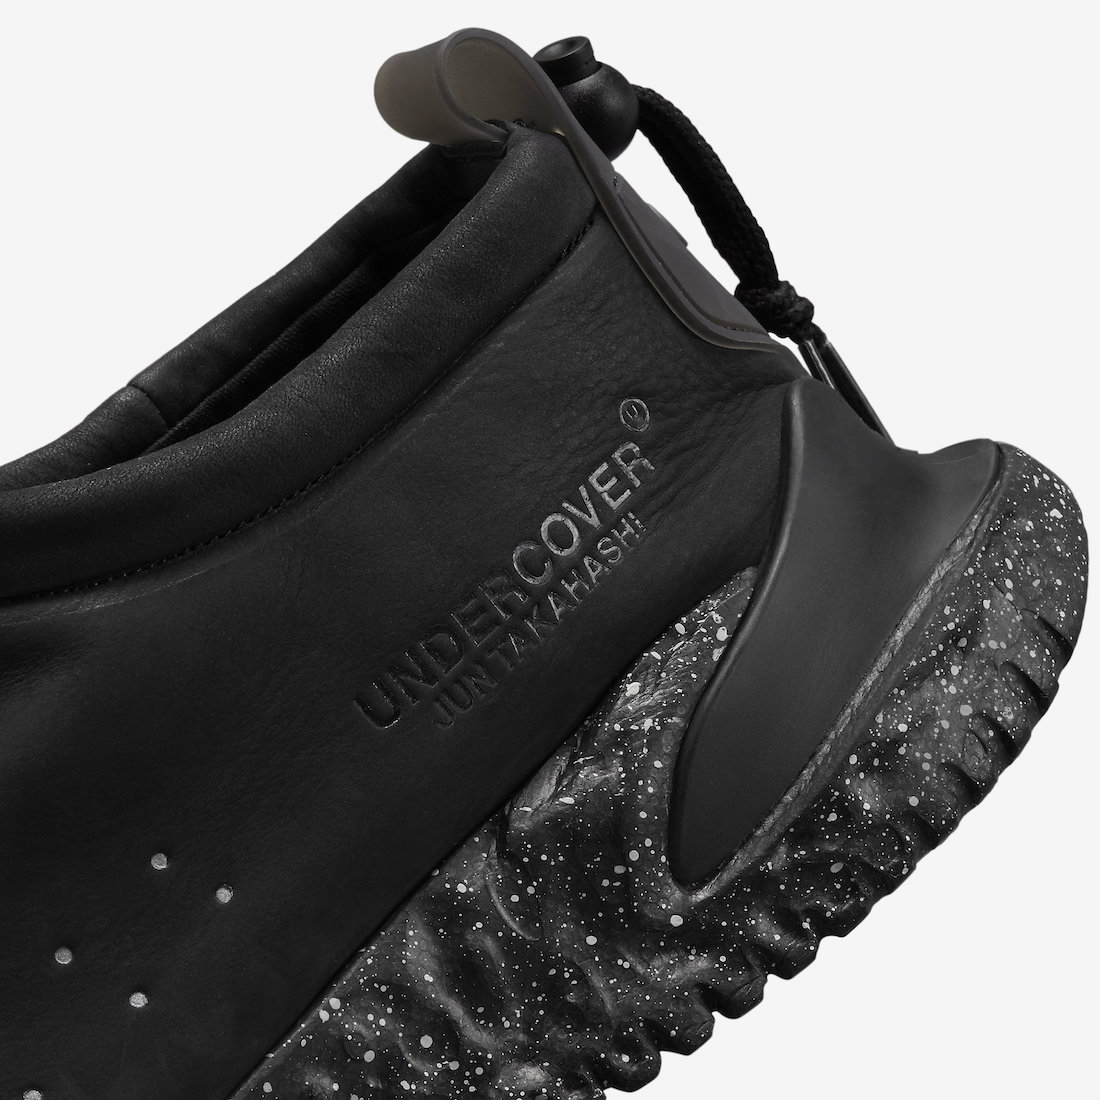 UNDERCOVER Nike Moc Flow Black DV5593-002 Release Date Info